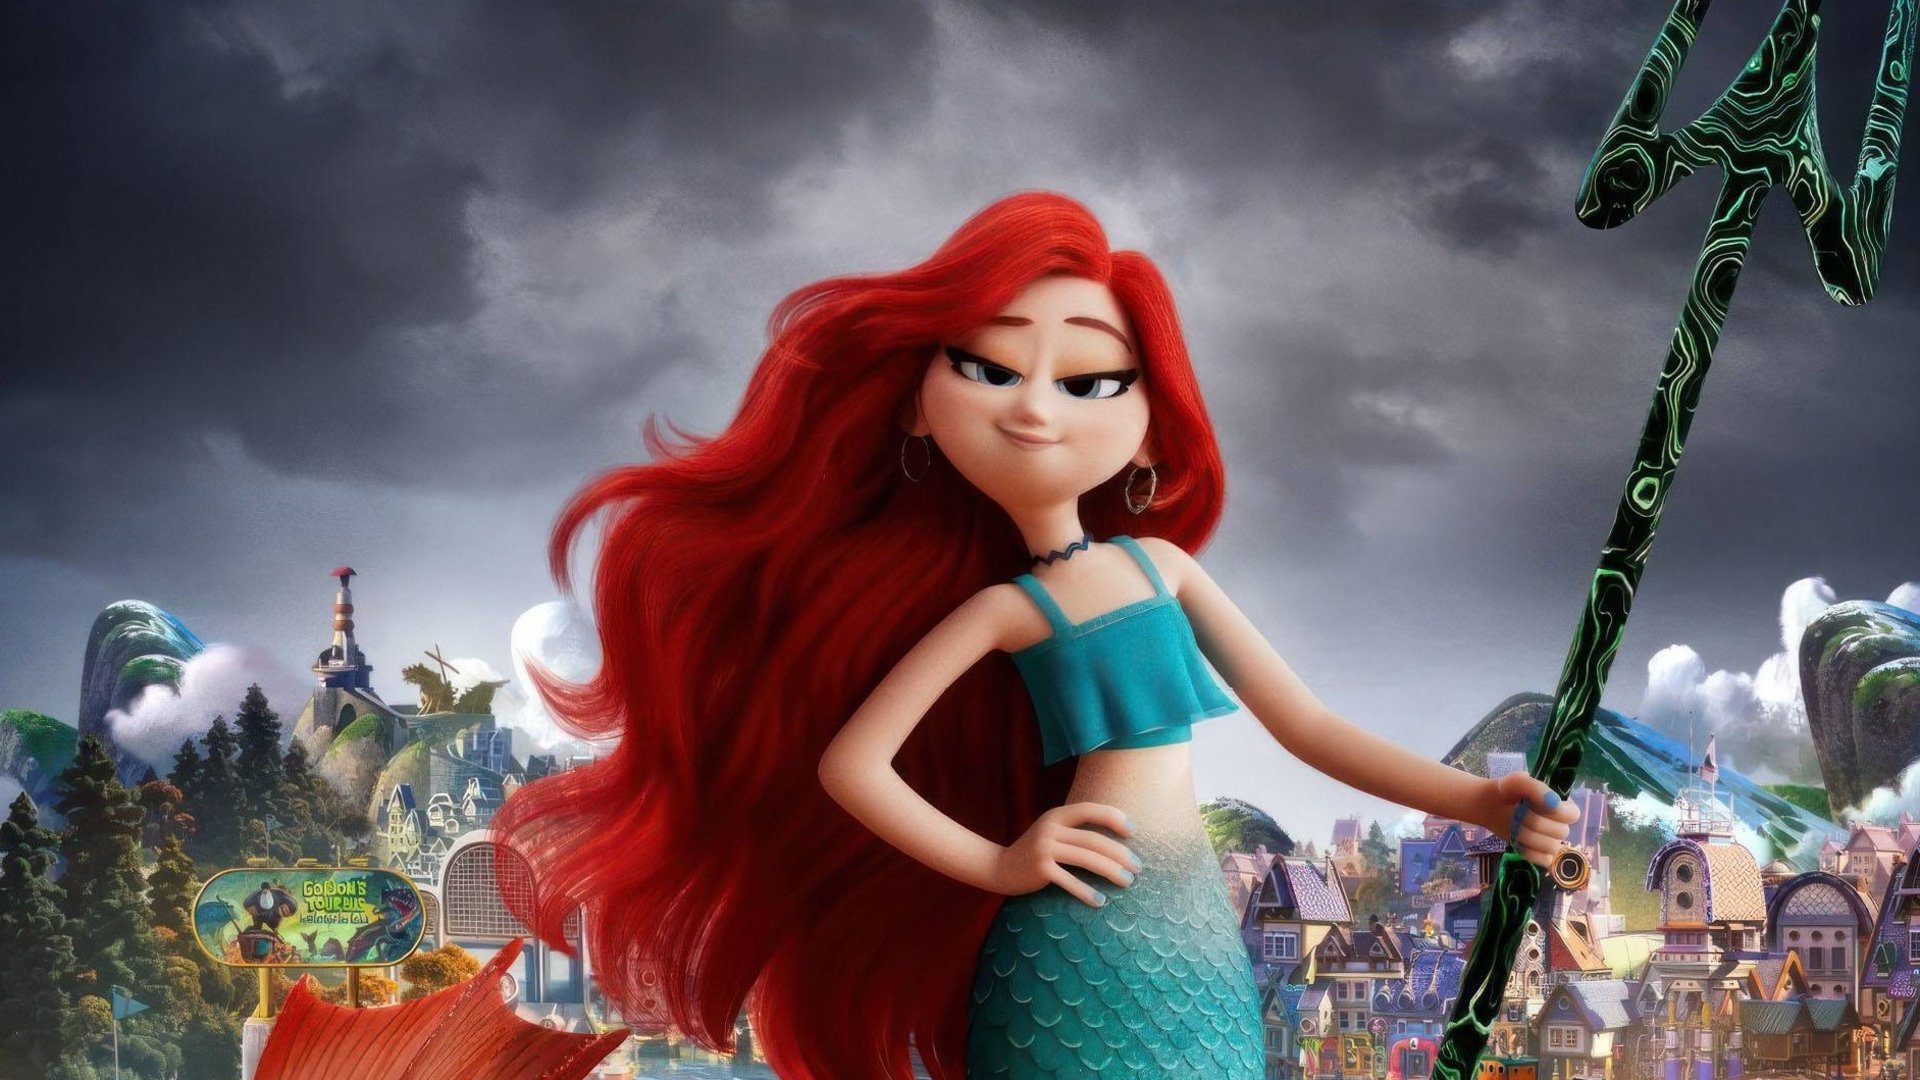 #Ganz anders als bei „Arielle“ – in diesem Animationsfilm wird die Meerjungfrau zum Monster